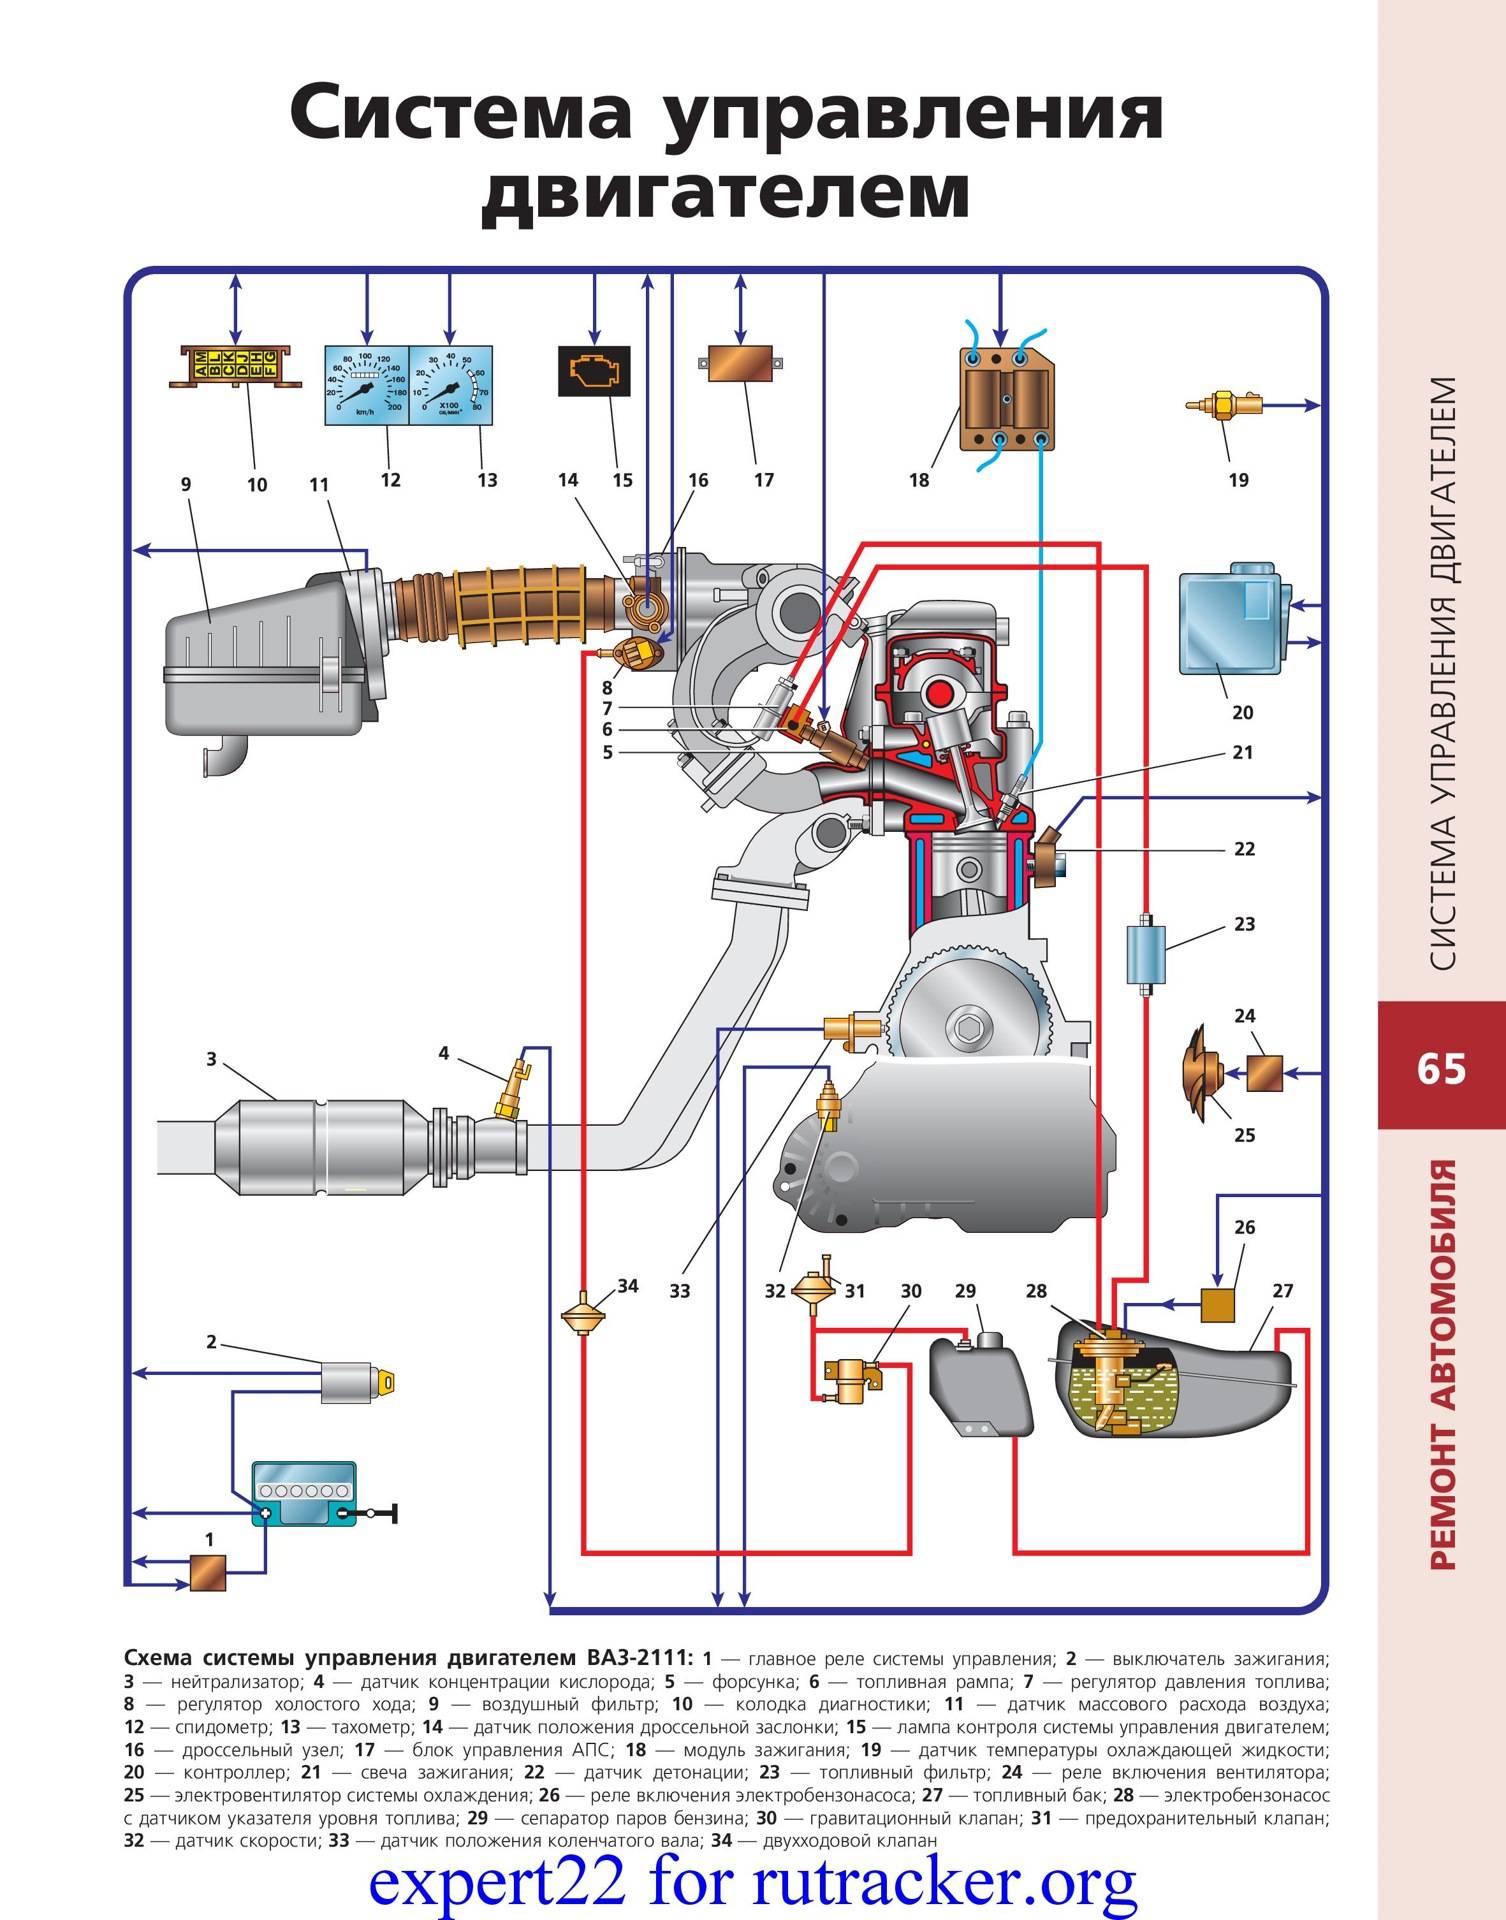 Системы управления бензиновым двигателем | автомобильный справочник